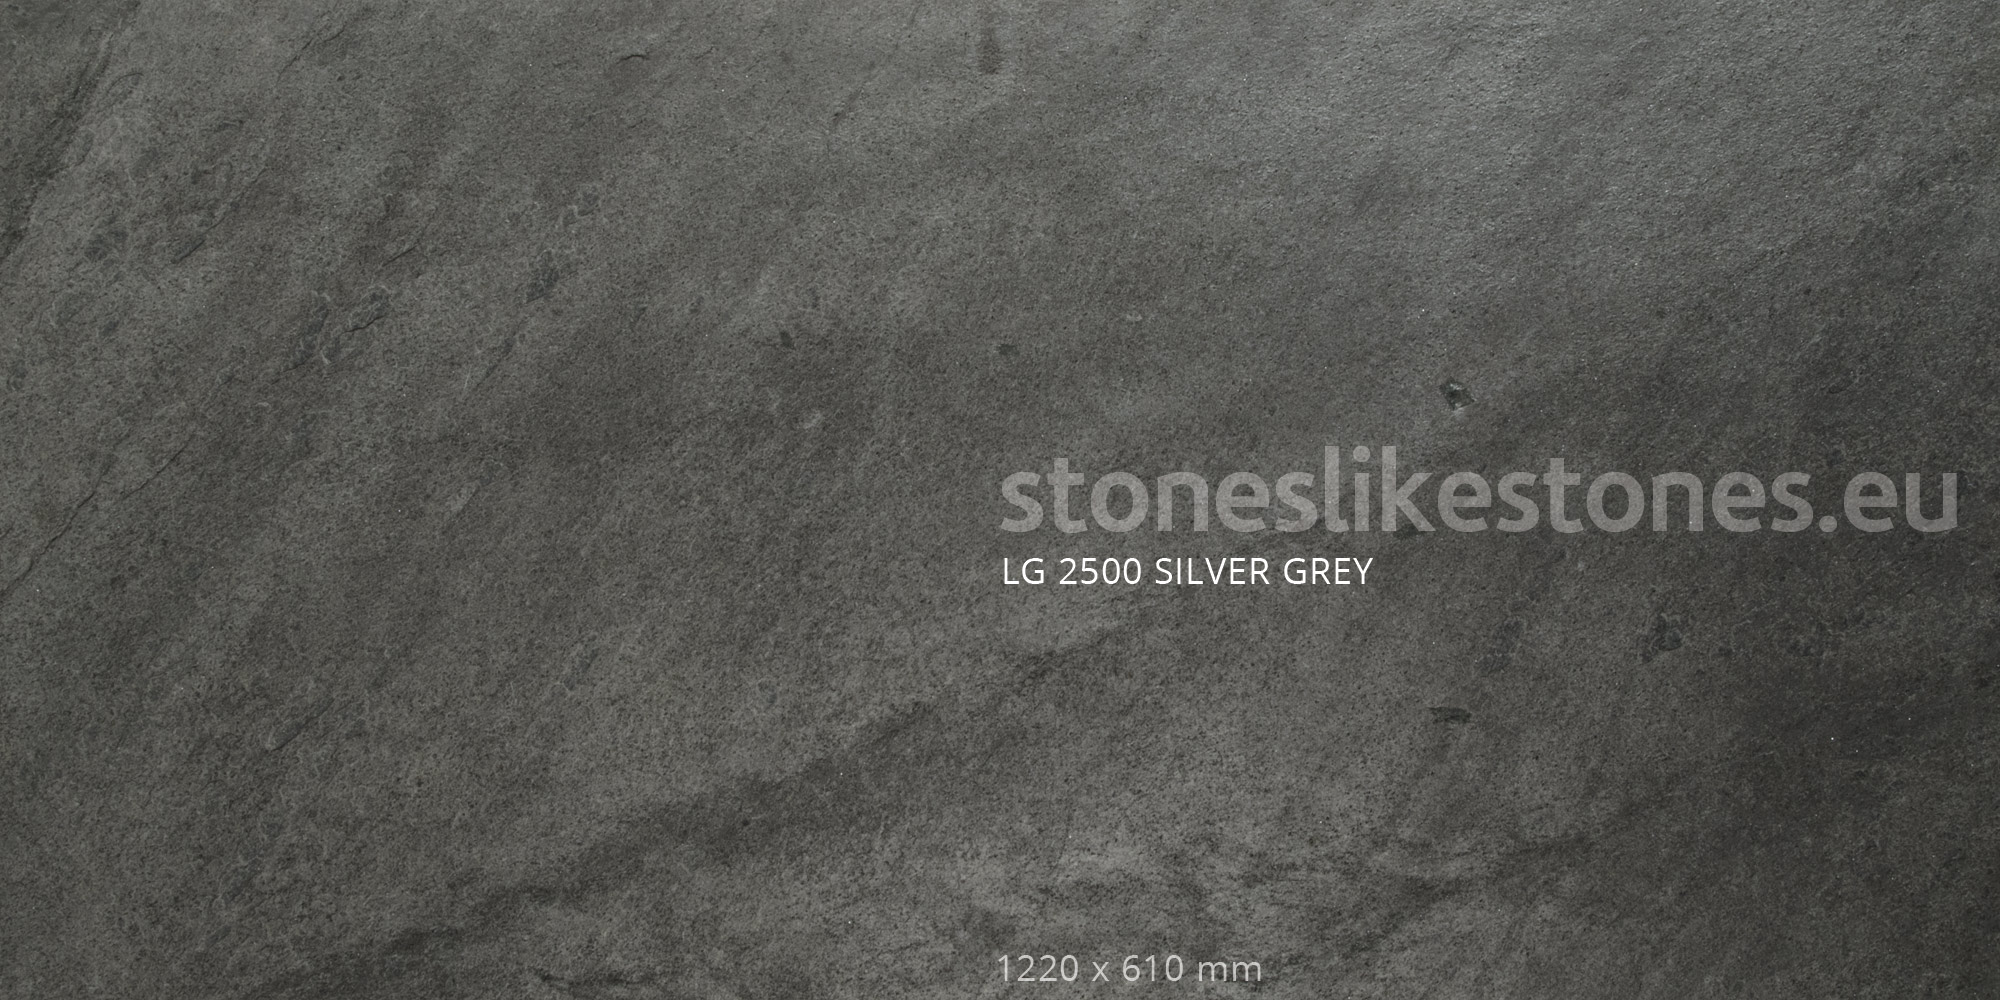 Dünnschiefer LG 2500 Silver Grey